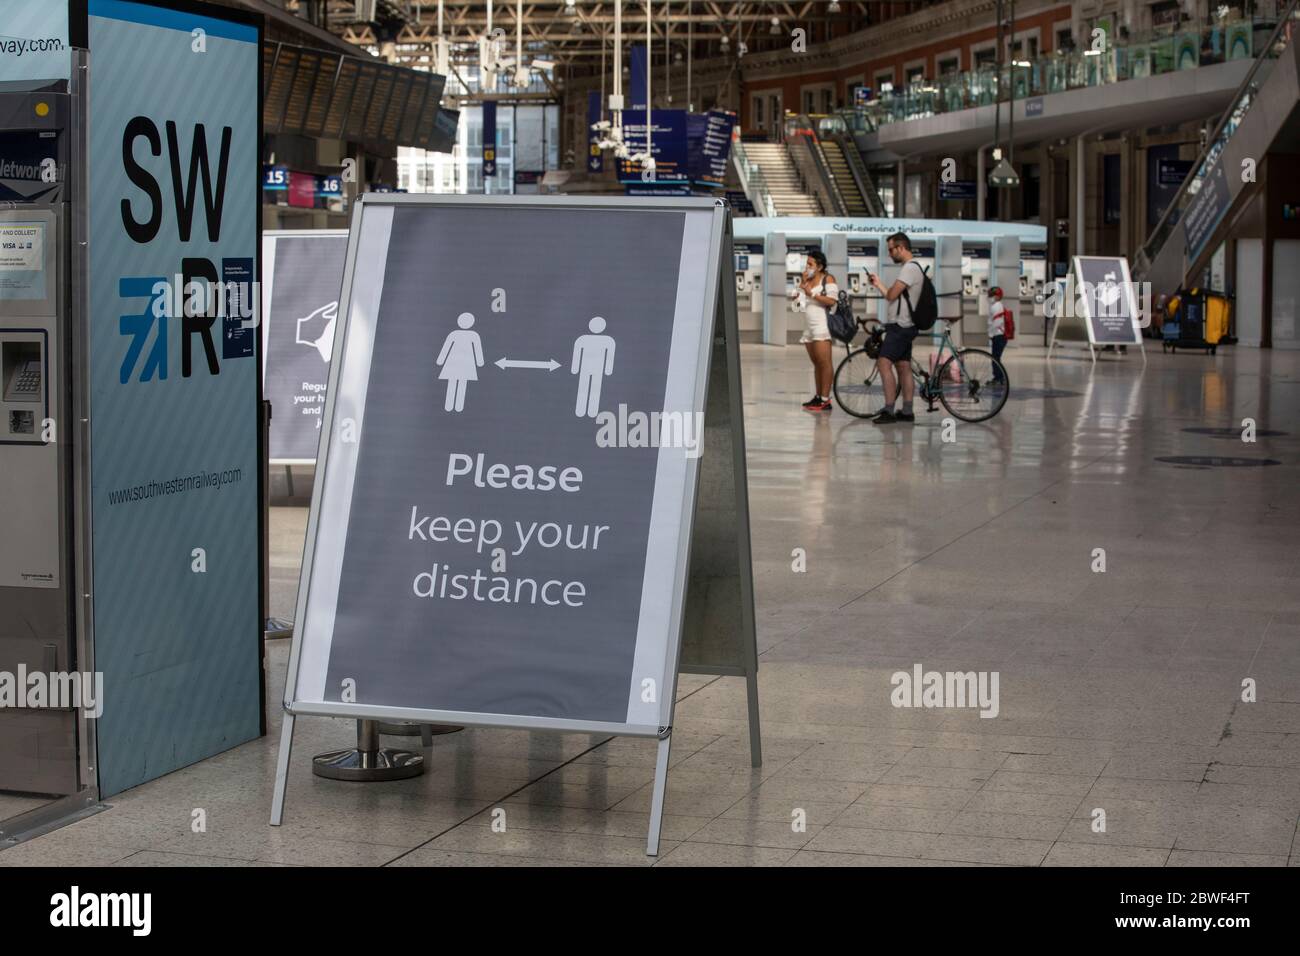 Des panneaux de demande d'hygiène pour le lavage des mains et le revêtement du visage sont situés dans le hall de la gare centrale de Waterloo, Londres, Angleterre, Royaume-Uni Banque D'Images